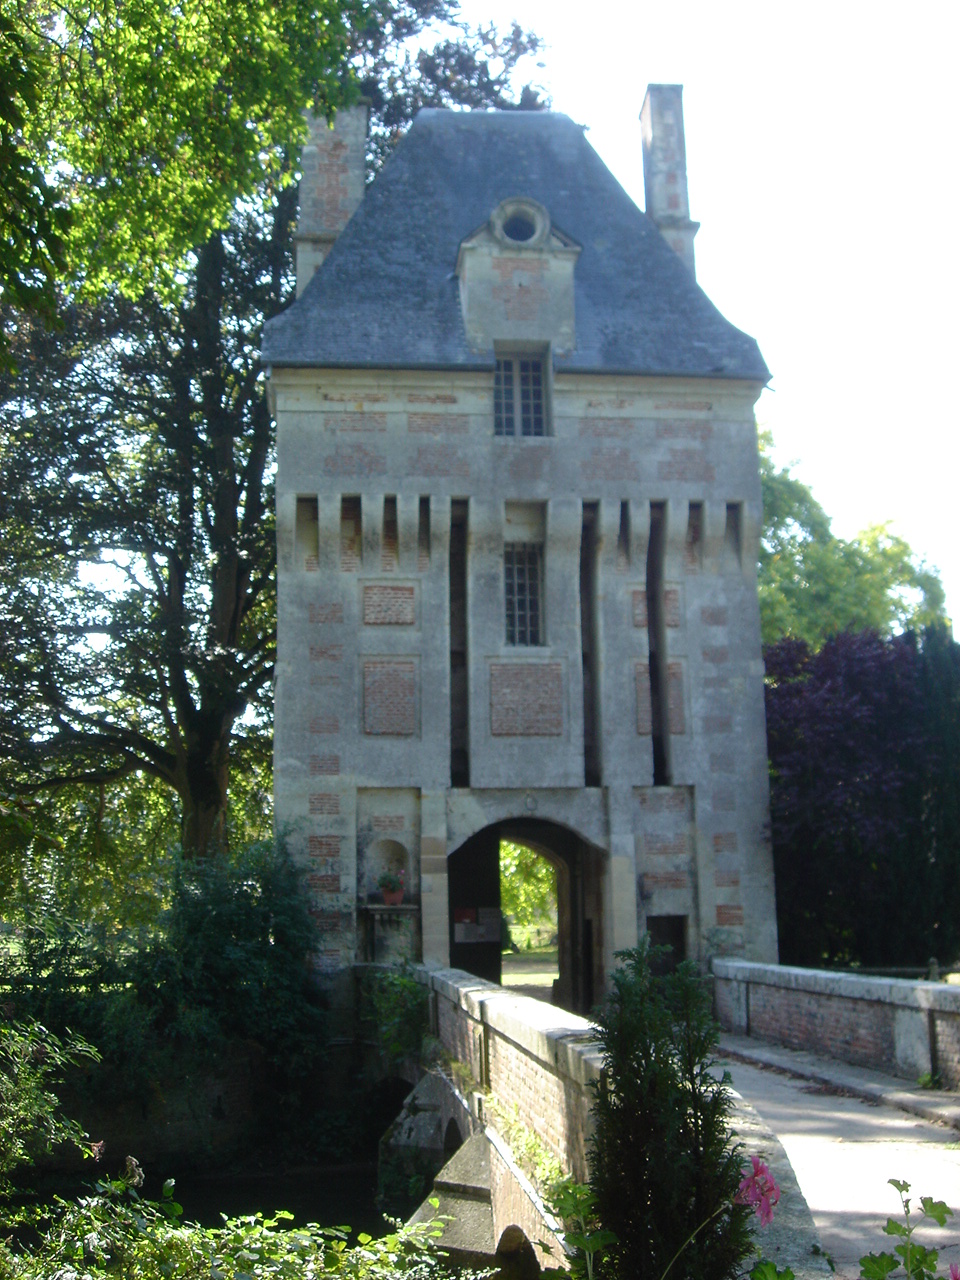 Bienvenue au Château du "Kinnor" - Fervaques